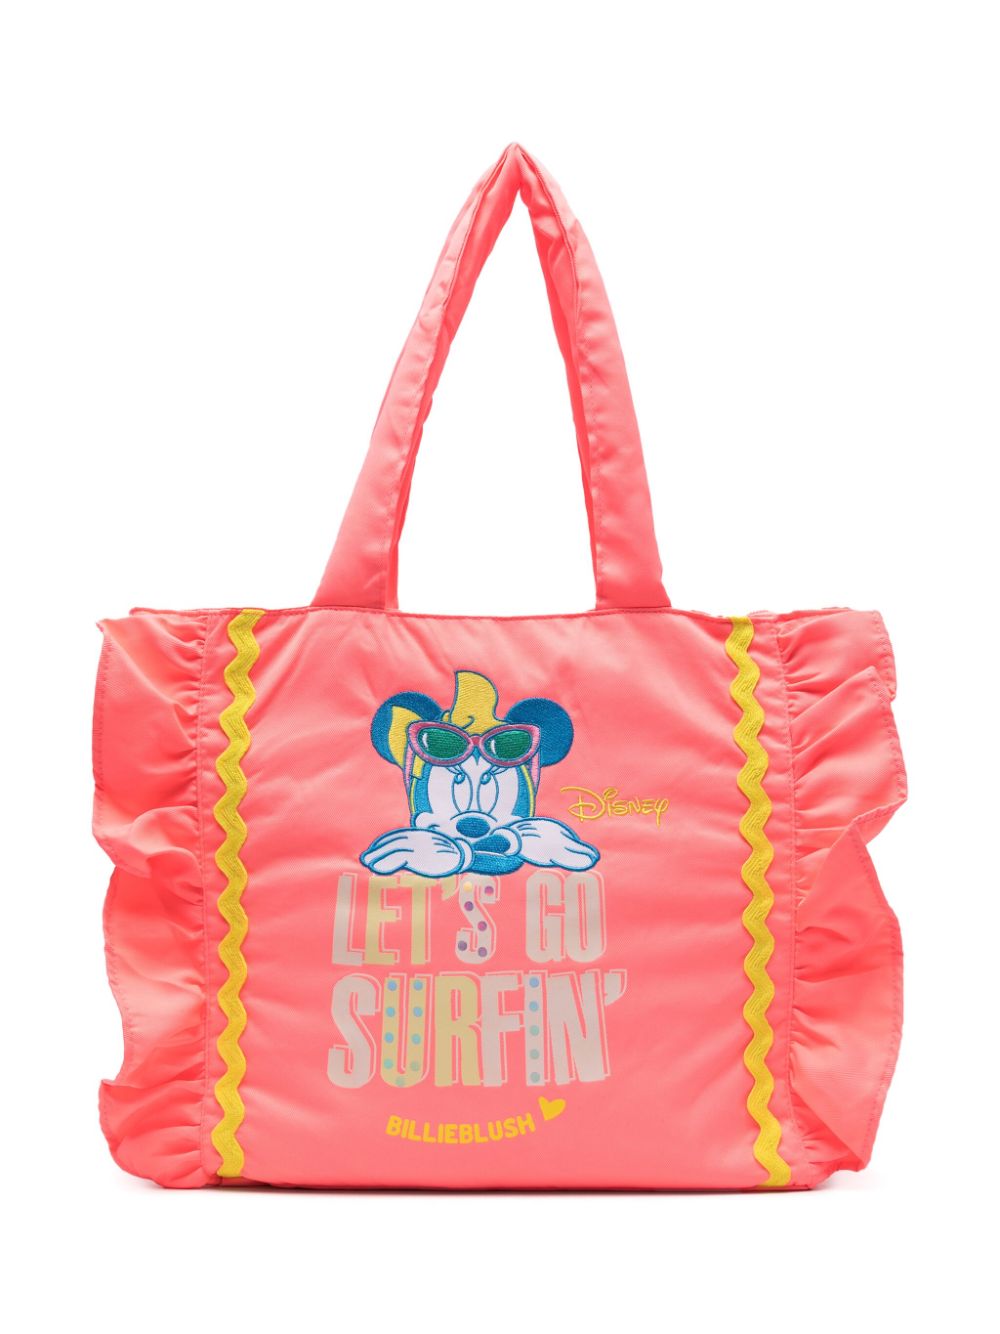 Billieblush x Disney Minnie-embroidered tote bag - Pink von Billieblush